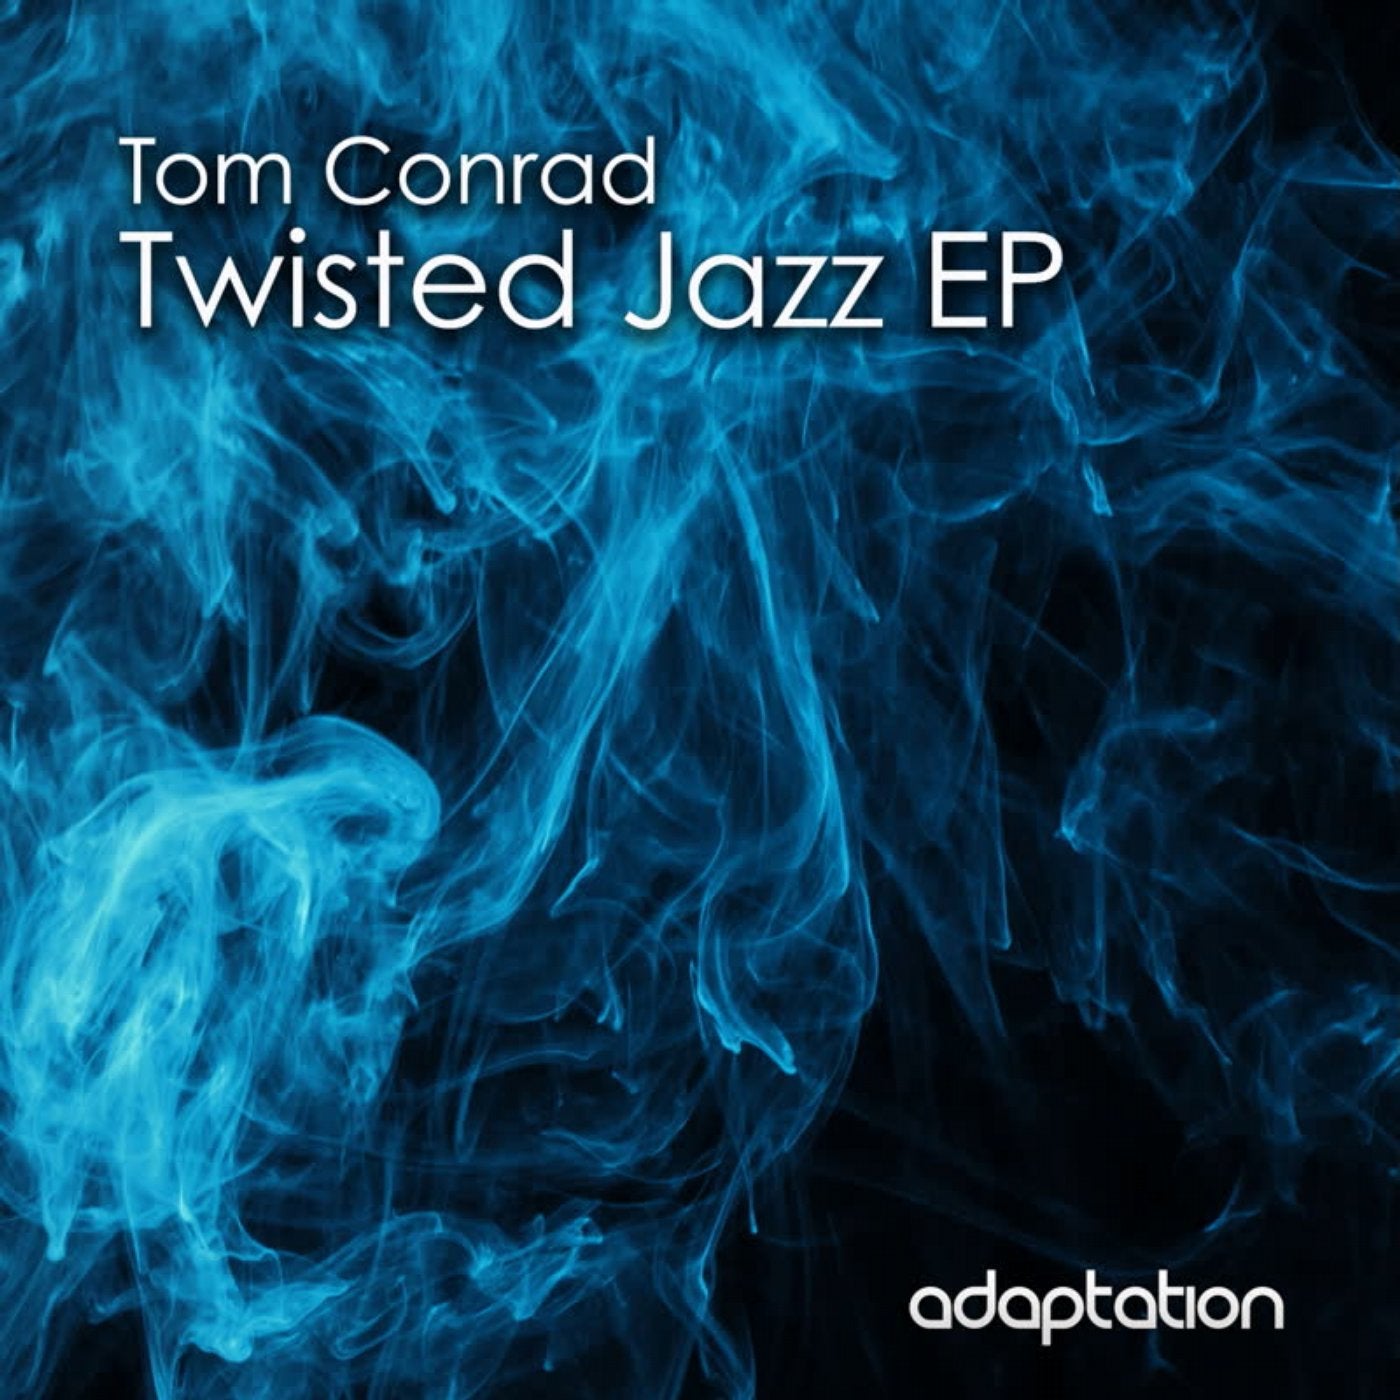 Twisted Jazz EP